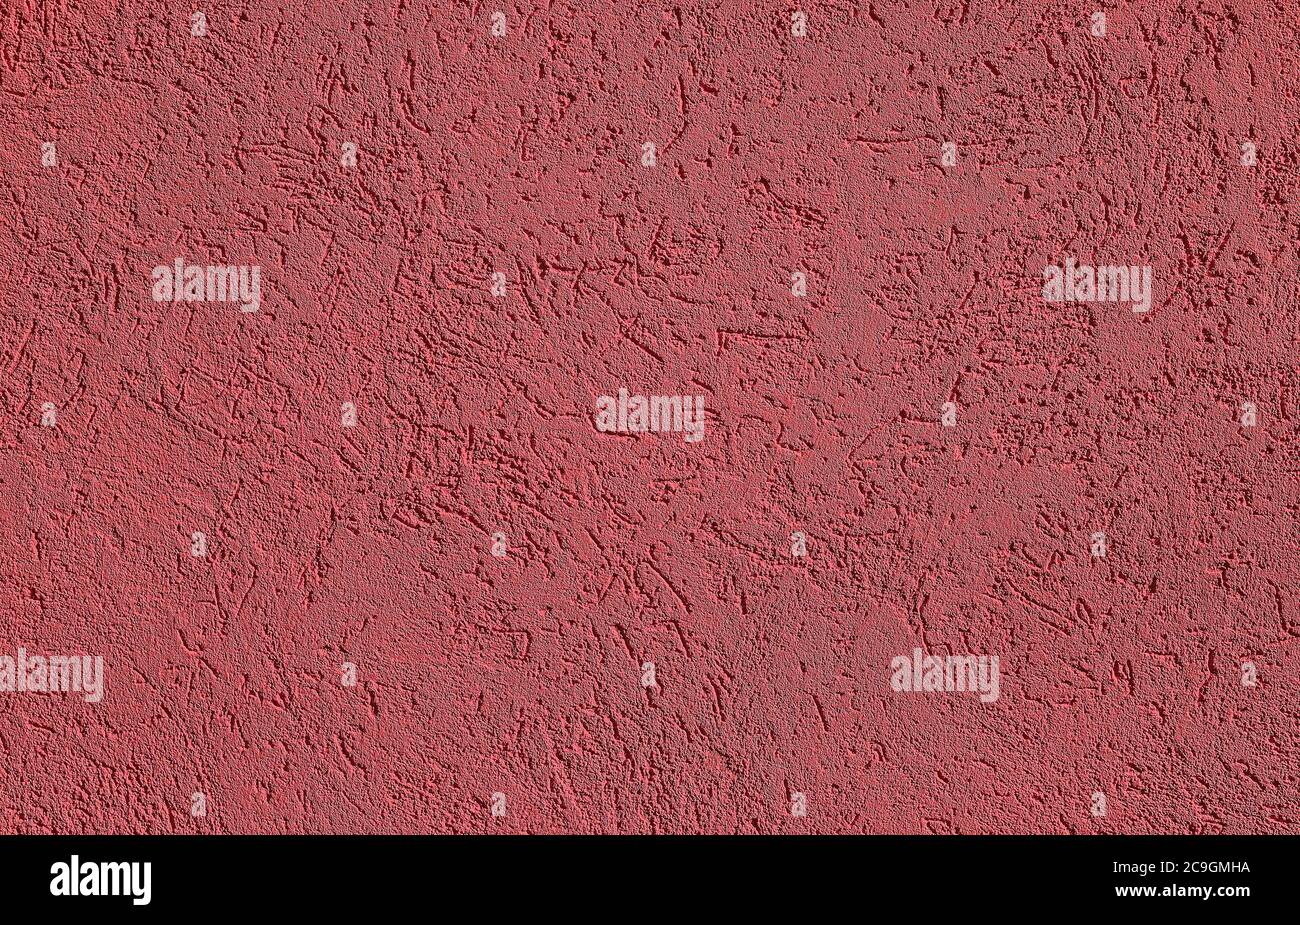 Rosso Borgogna cemento testurizzato o fondo parete di cemento. Messa a fuoco profonda. Modello o modello per un design moderno. Foto Stock